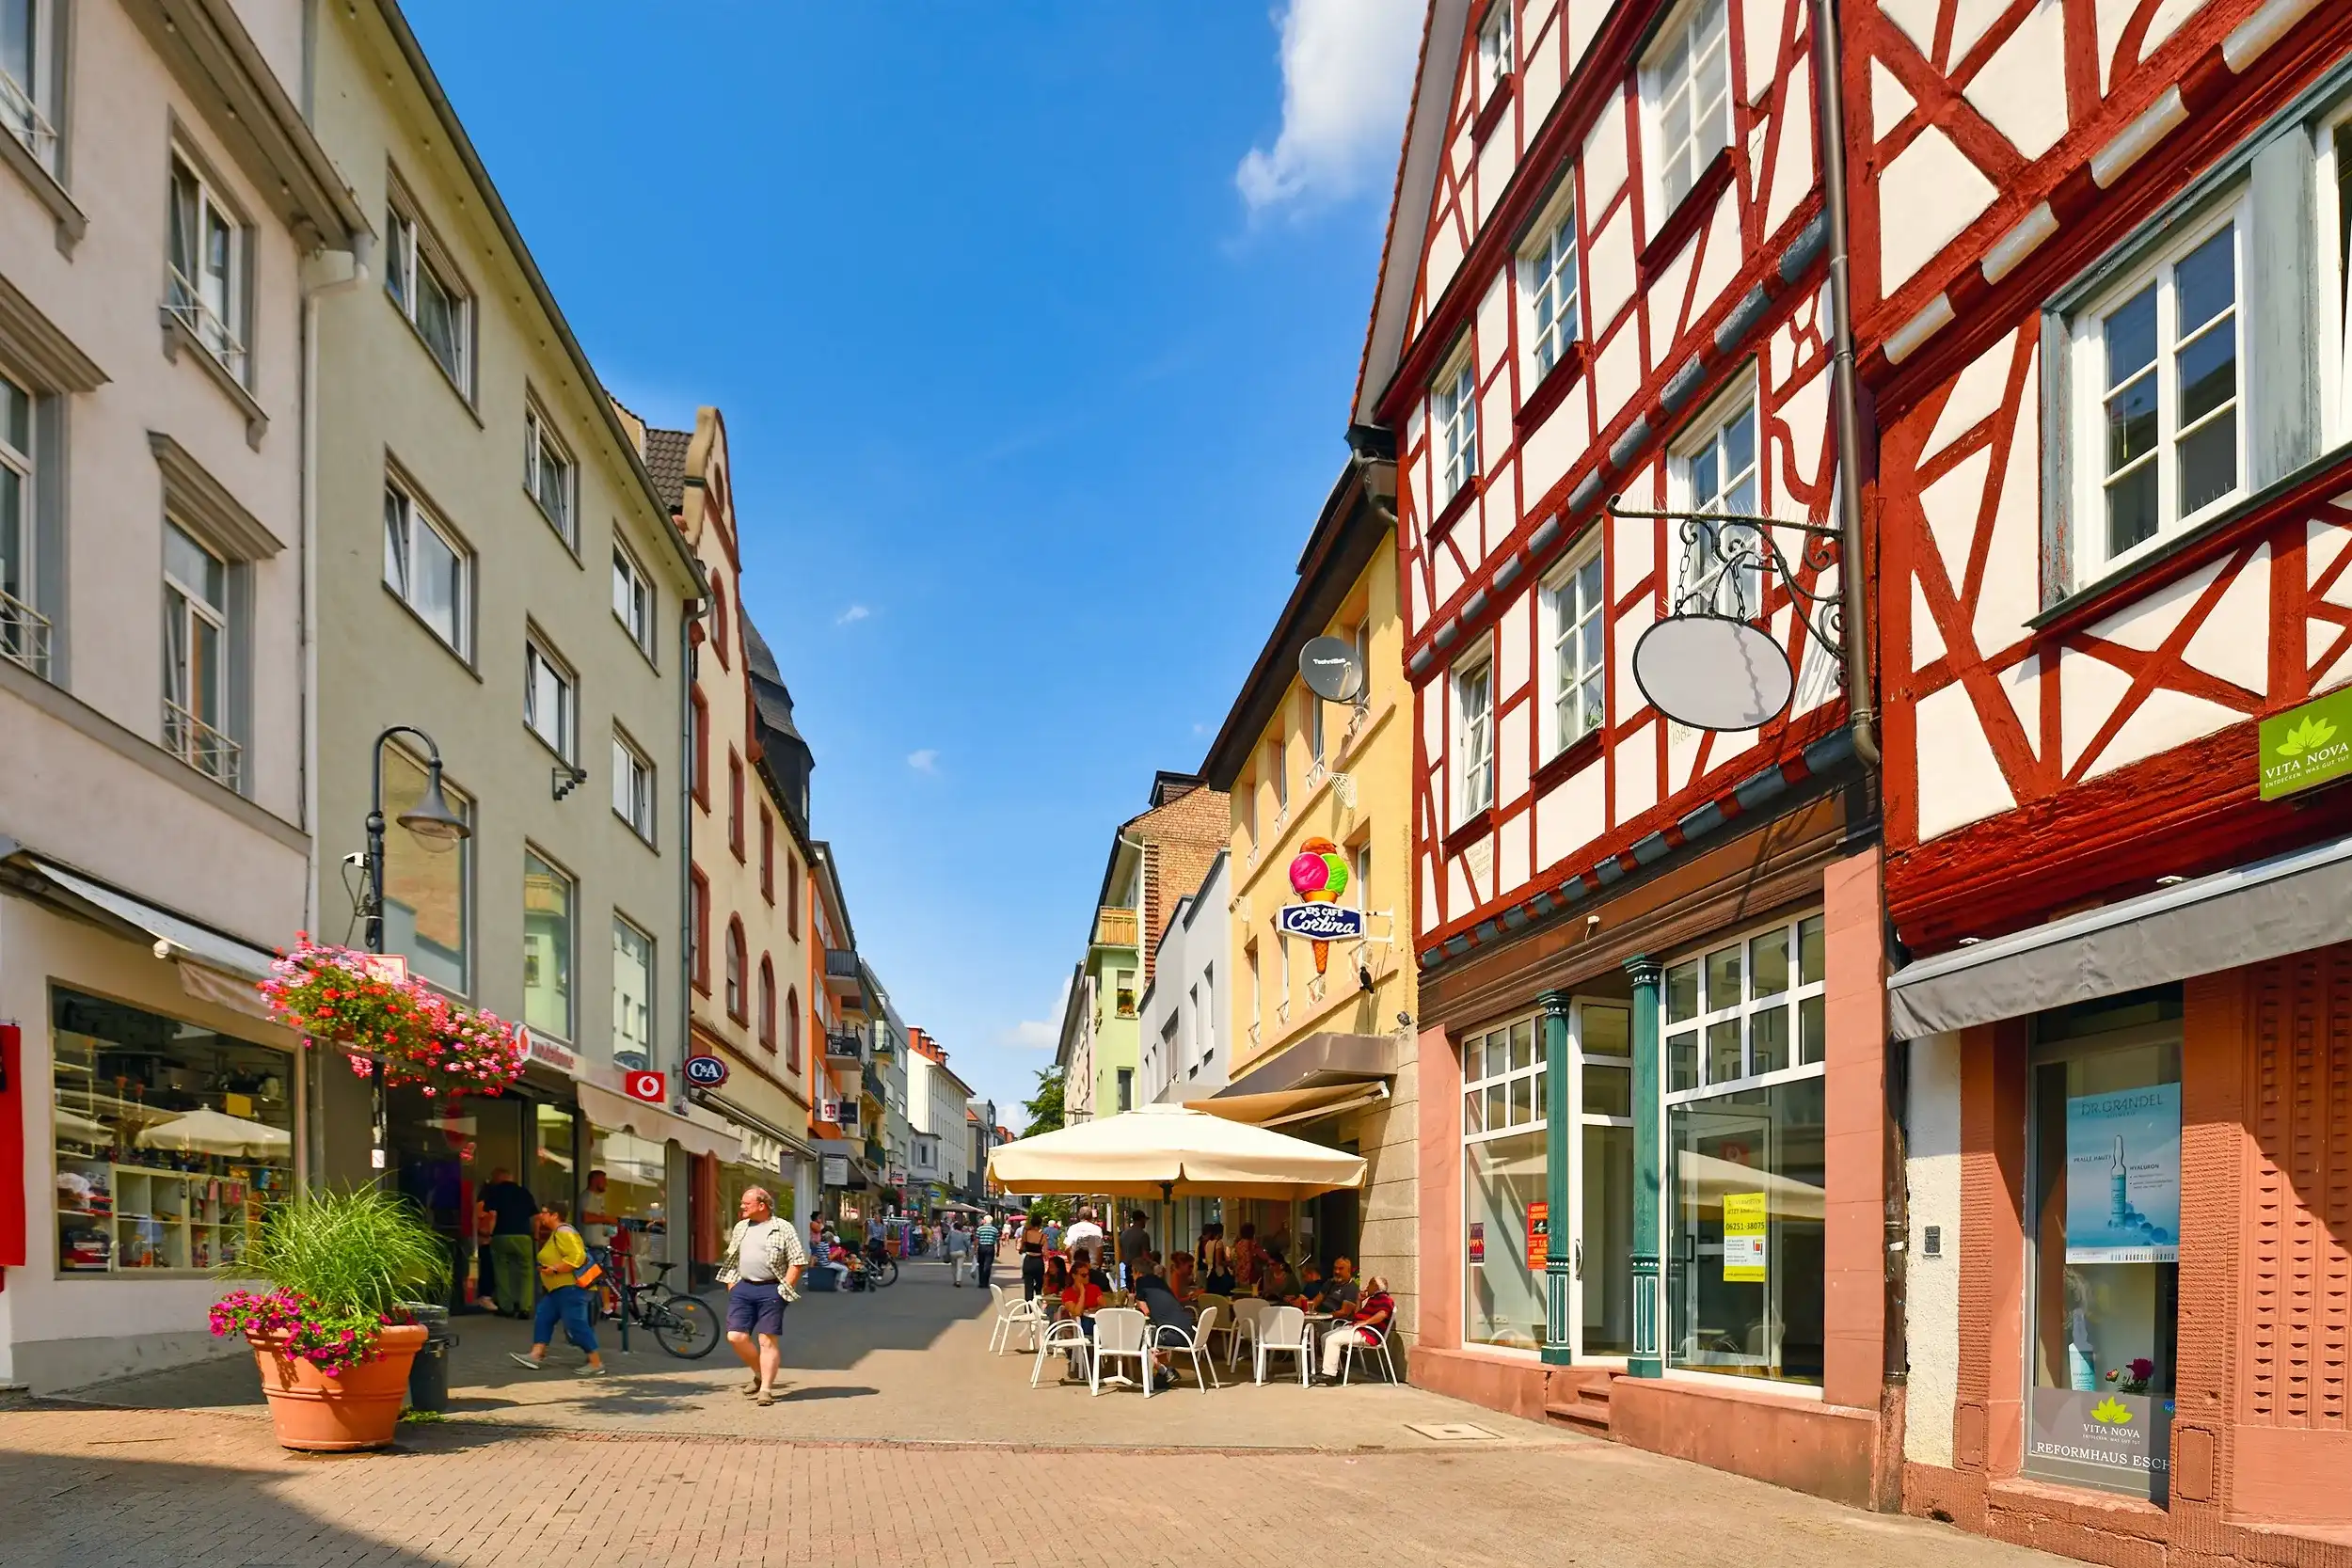 Best Bensheim hotels. Cheap hotels in Bensheim, Germany